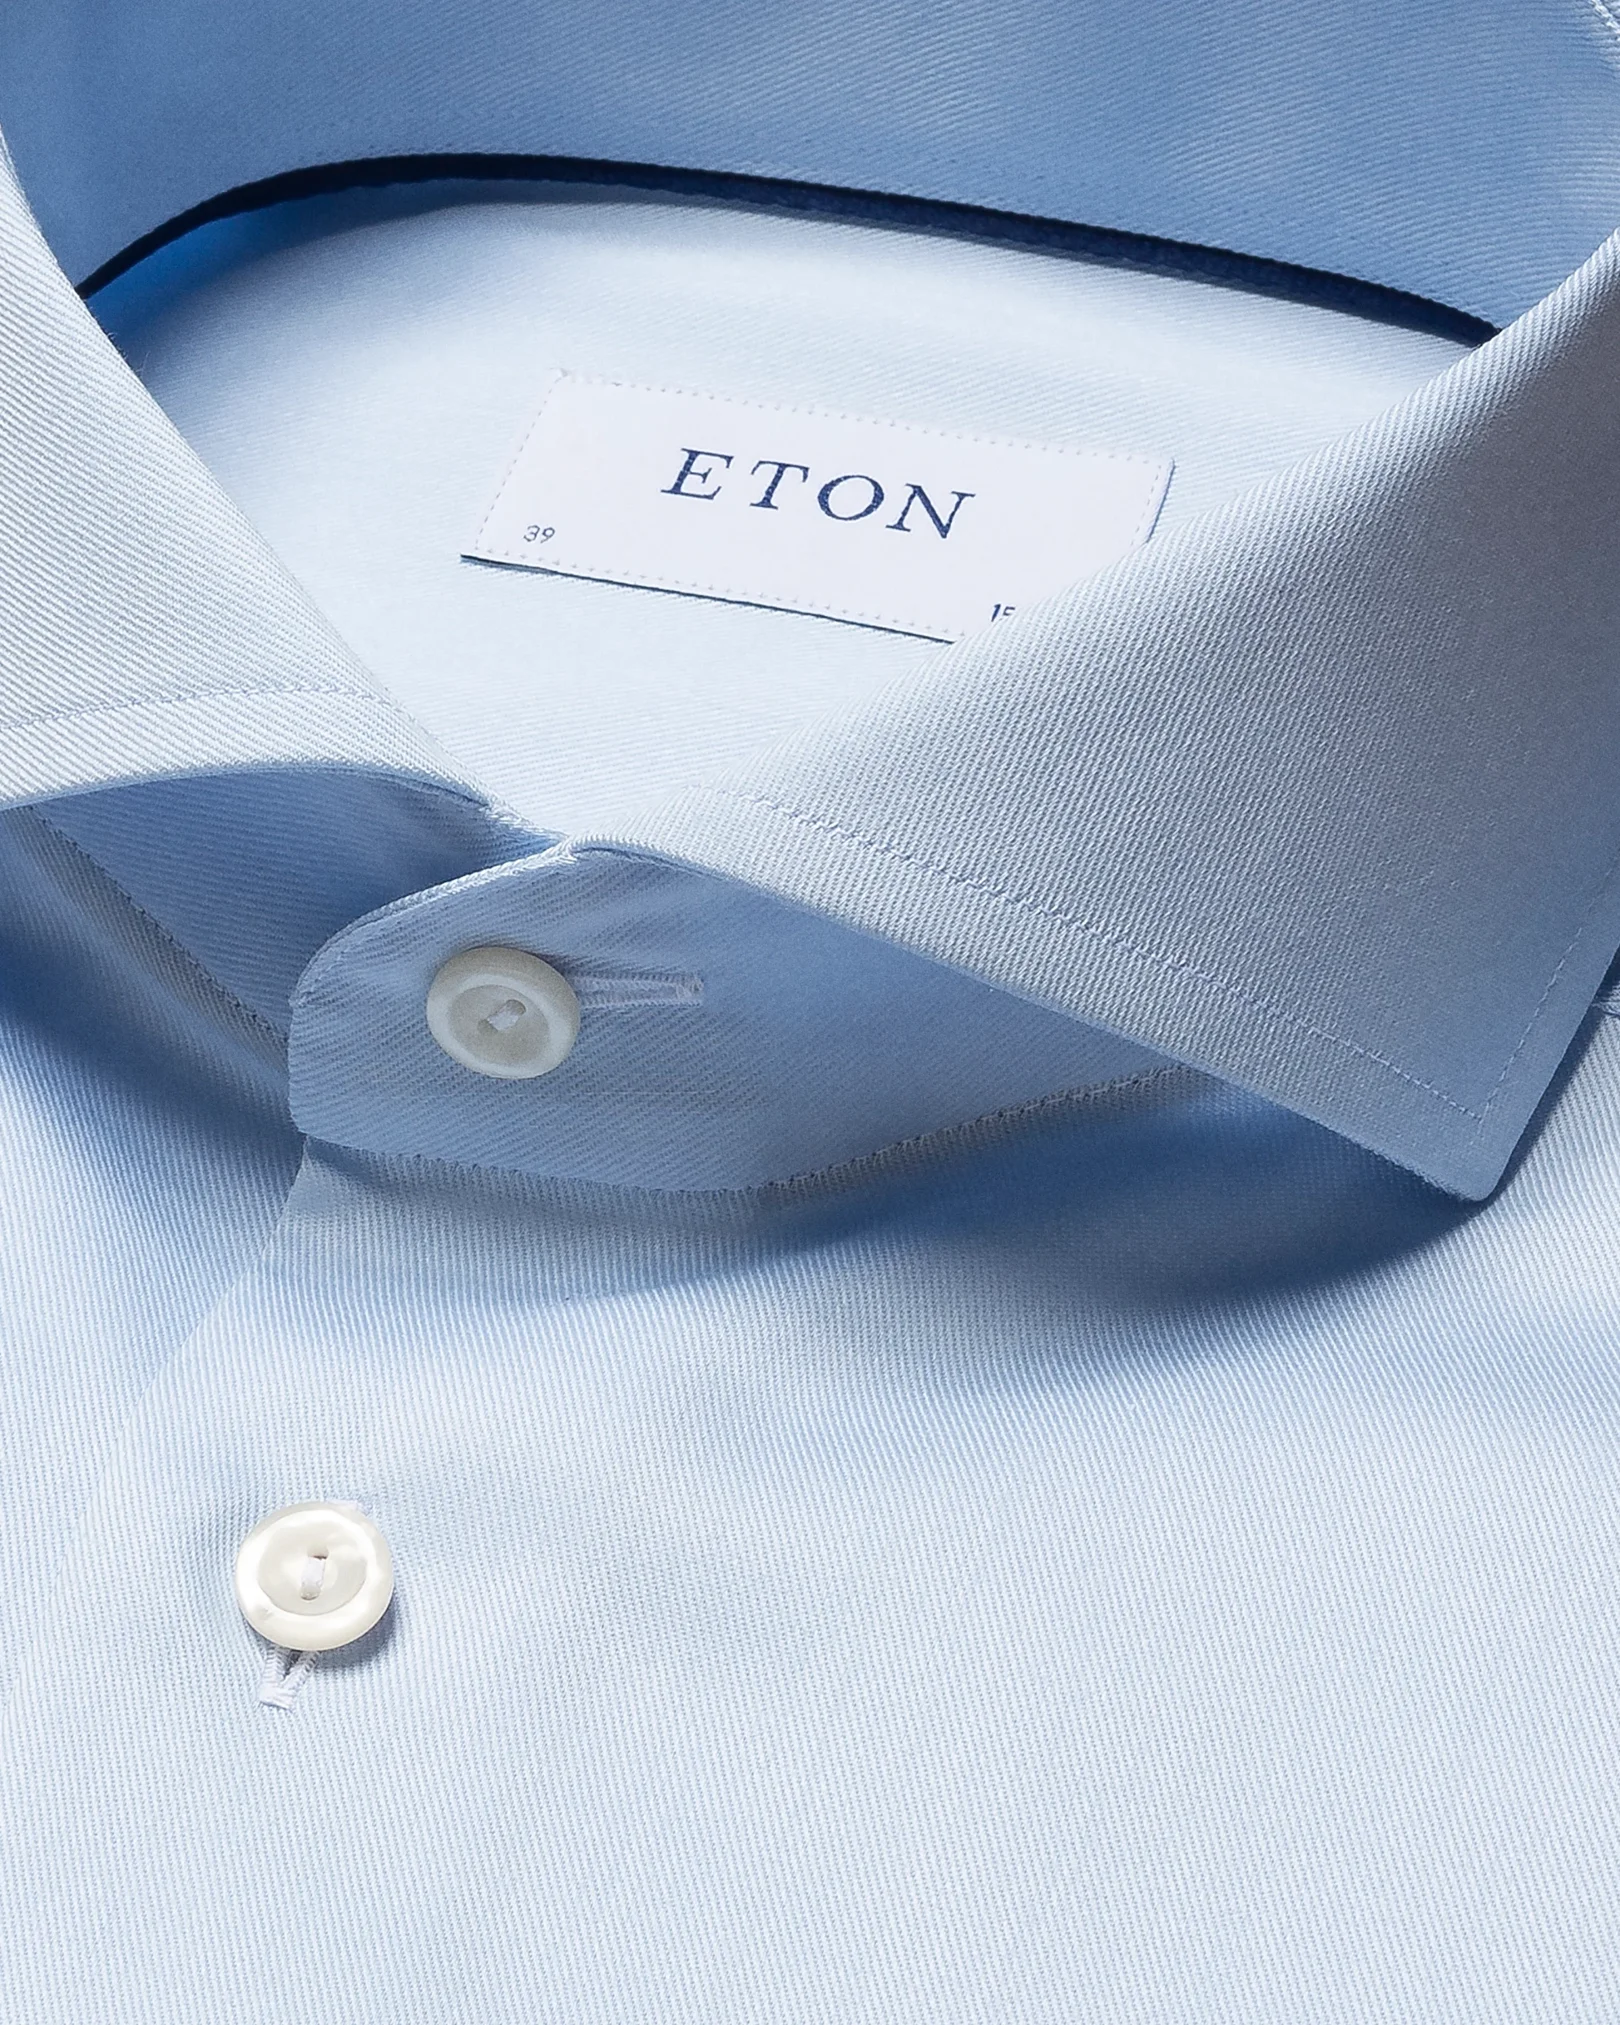 Eton - light blue twill strech shirt